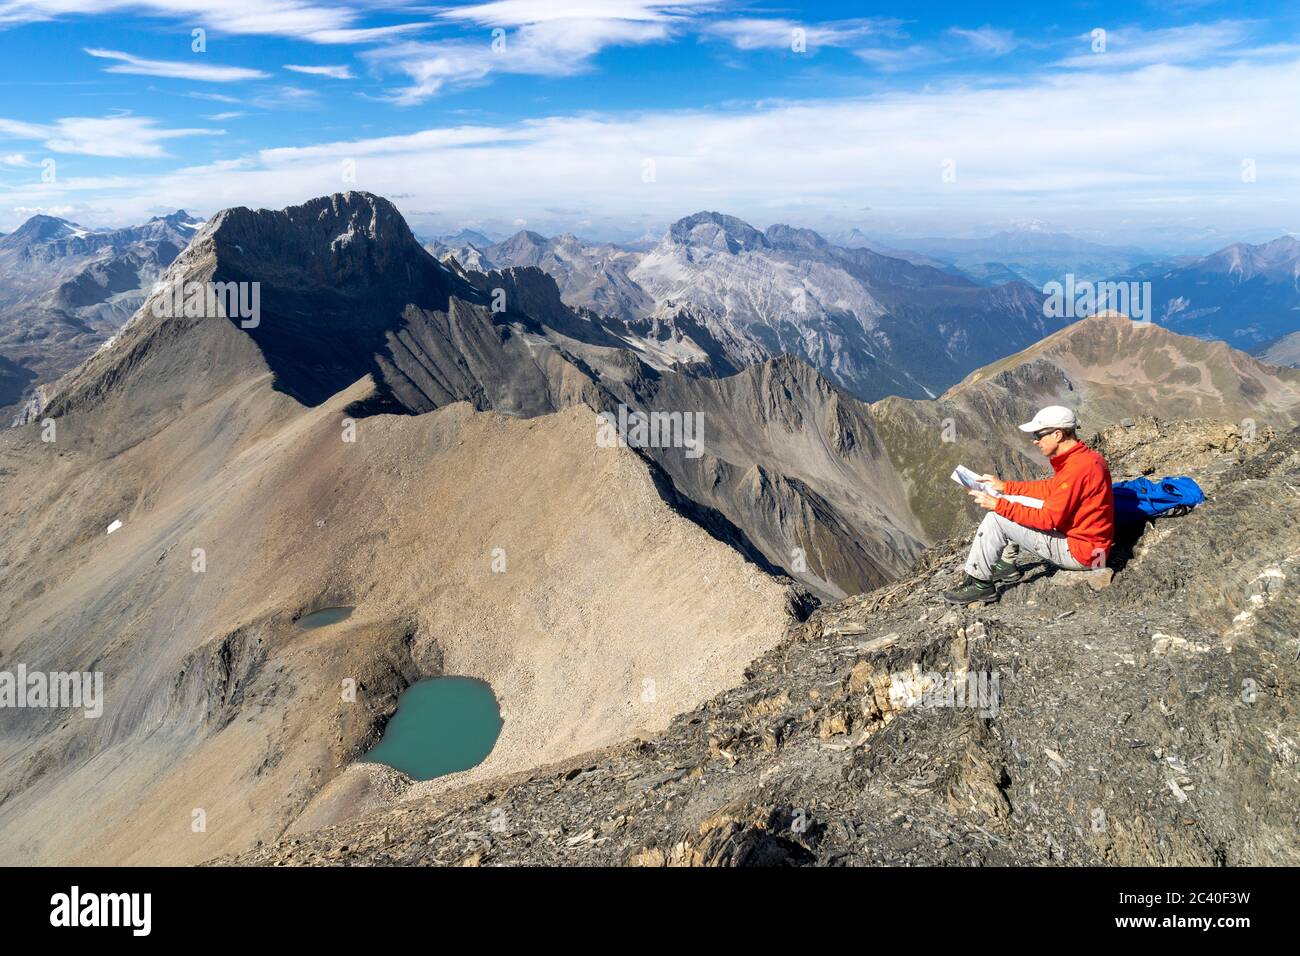 Der Piz Üertsch (Gipfel aus Dolomit-Gestein) und der Piz Ela (Bildmitte hinten, ebenfalls Dolomit). Sicht vom Piz Blaisun (Kalk). Namenlose Seen. Albu Stock Photo